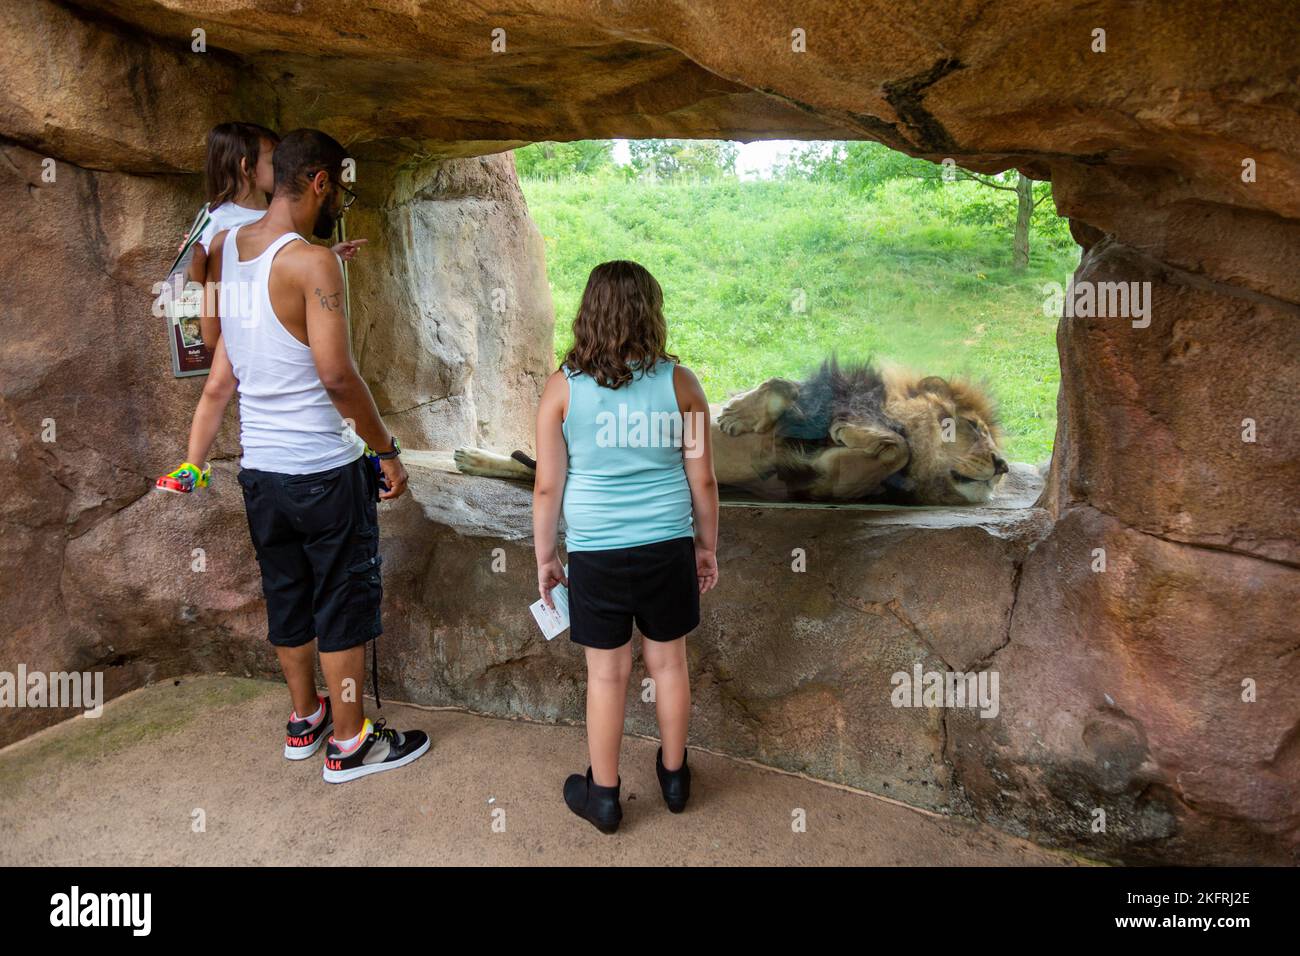 Les clients regardent un lion africain masculin se coucher contre le verre de son enceinte alors qu'il dort au fort Wayne Children's Zoo à fort Wayne, Indiana, États-Unis. Banque D'Images